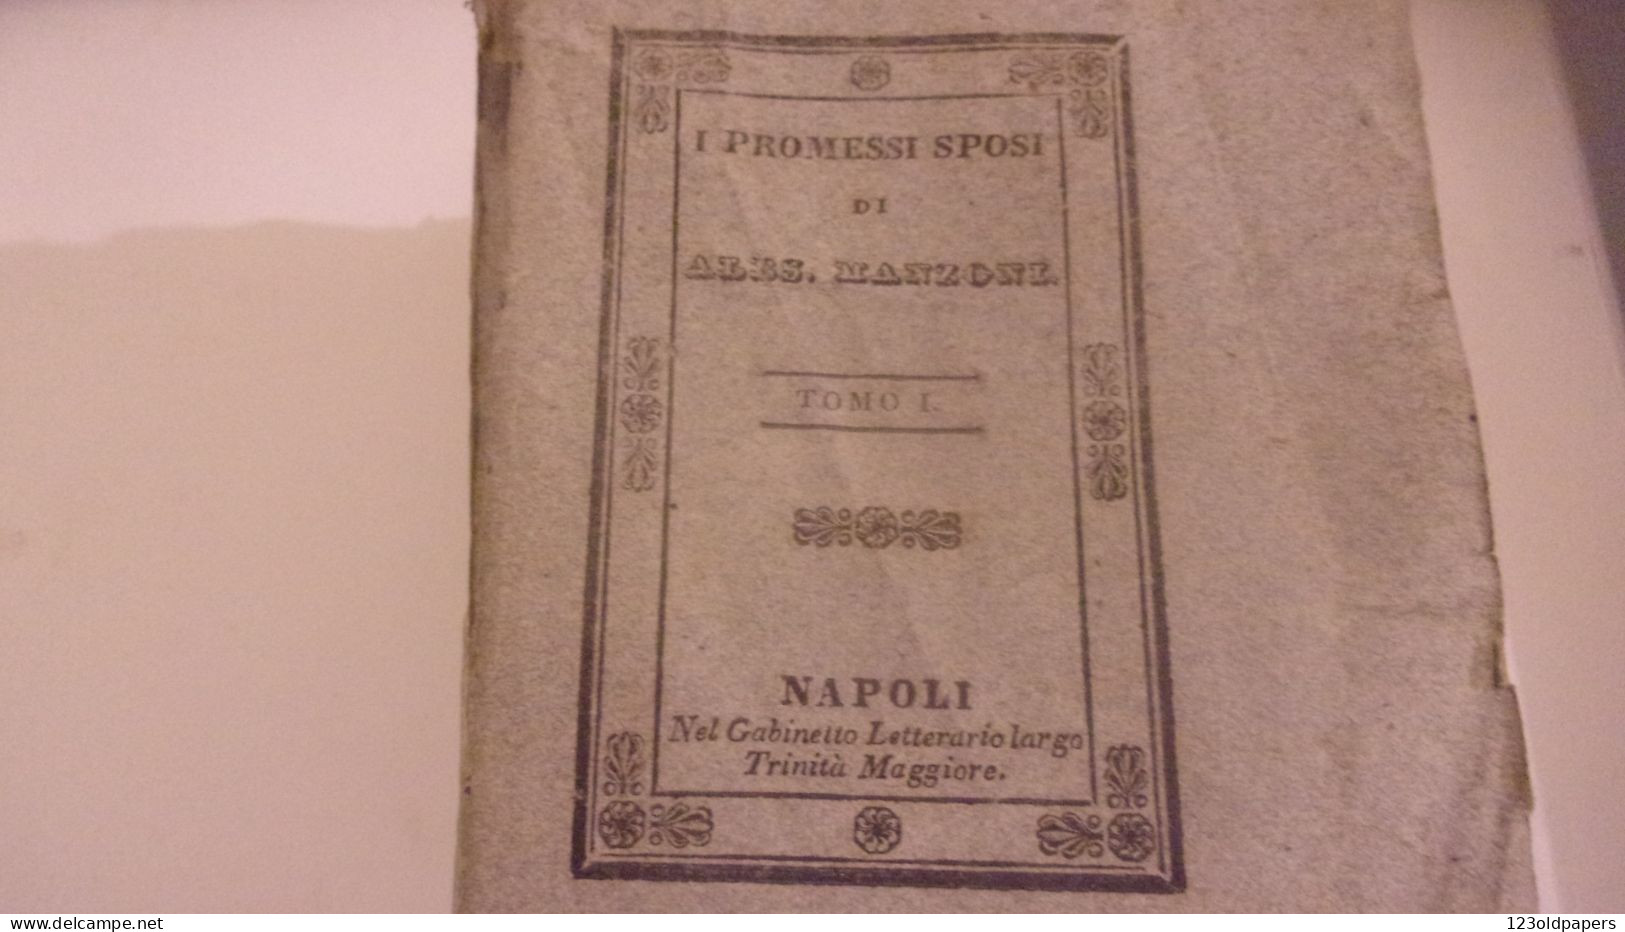 1836 6 VOL COMPLET I PROMESSI SPOSI DI ALES MANZONI  NAPOLI GABINETTO LETTERARIO - Old Books